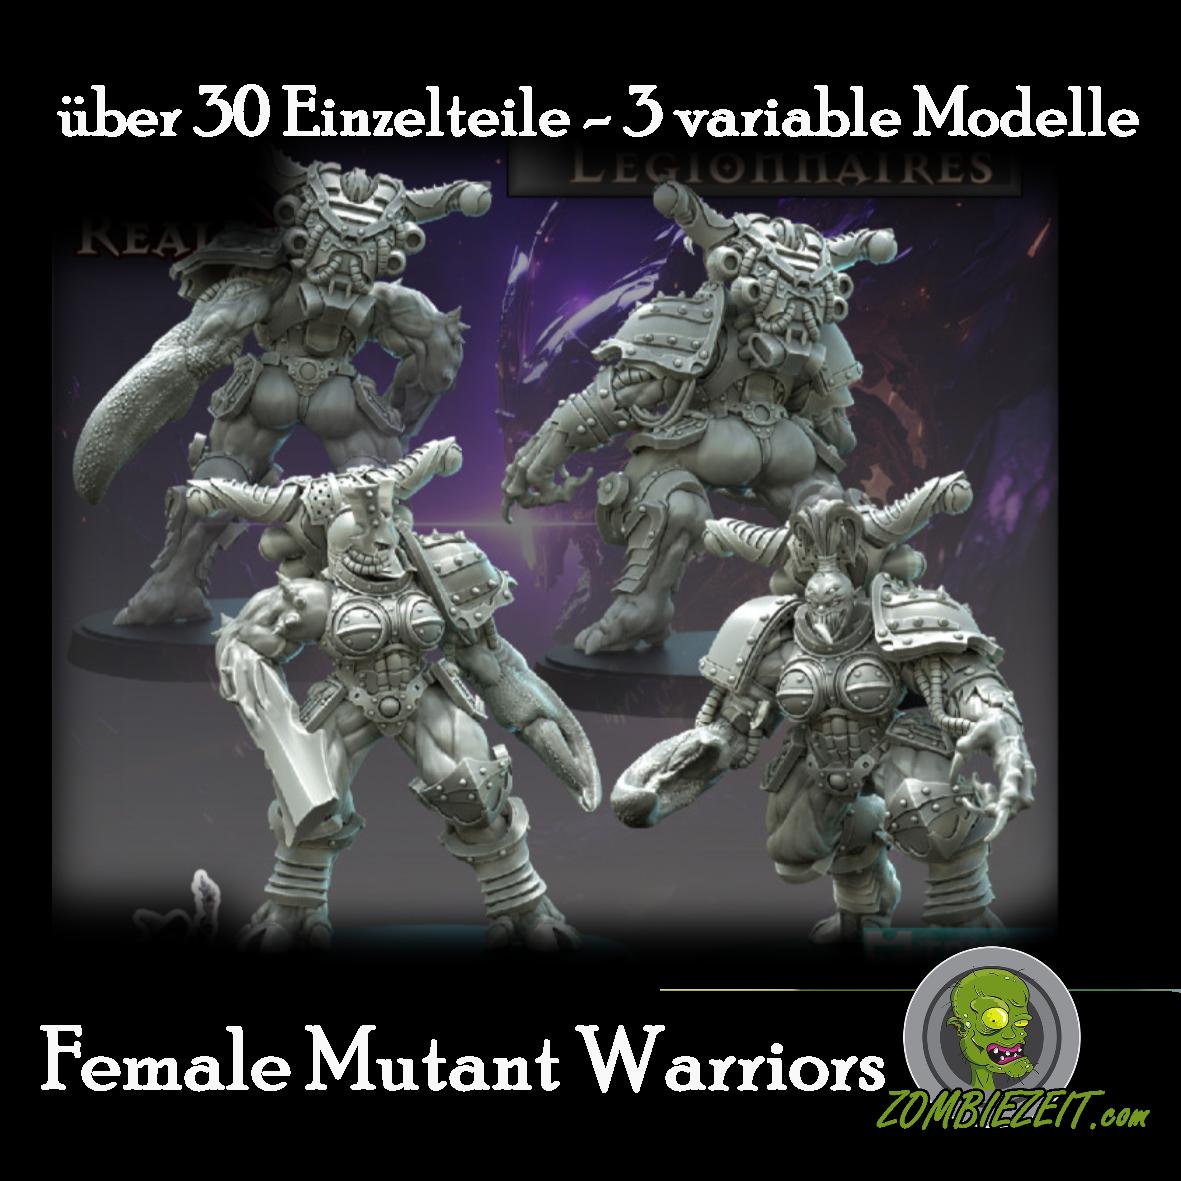 Female Mutant Wariiors